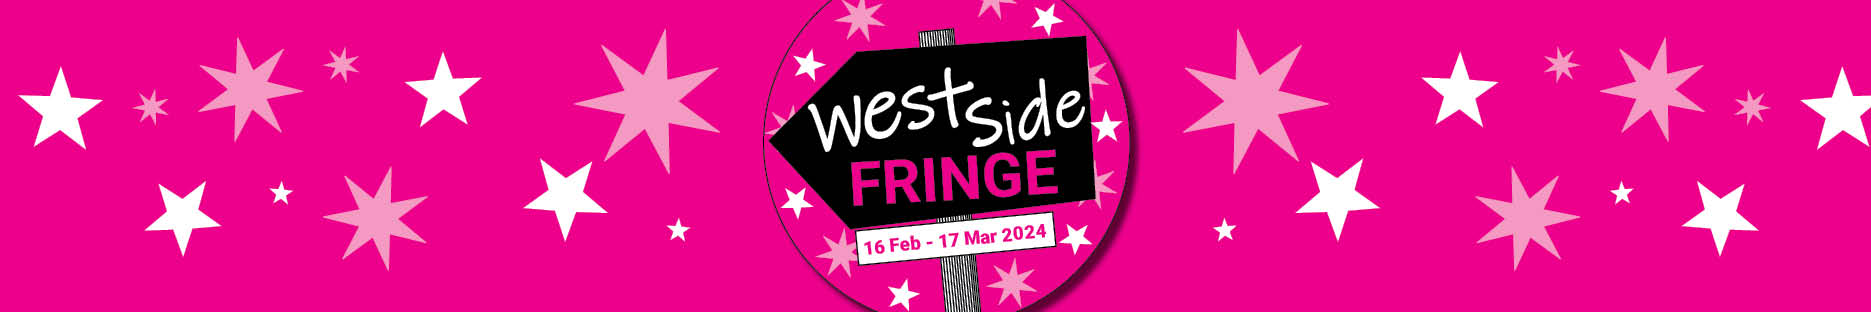 Westside Fringe web banner.jpg